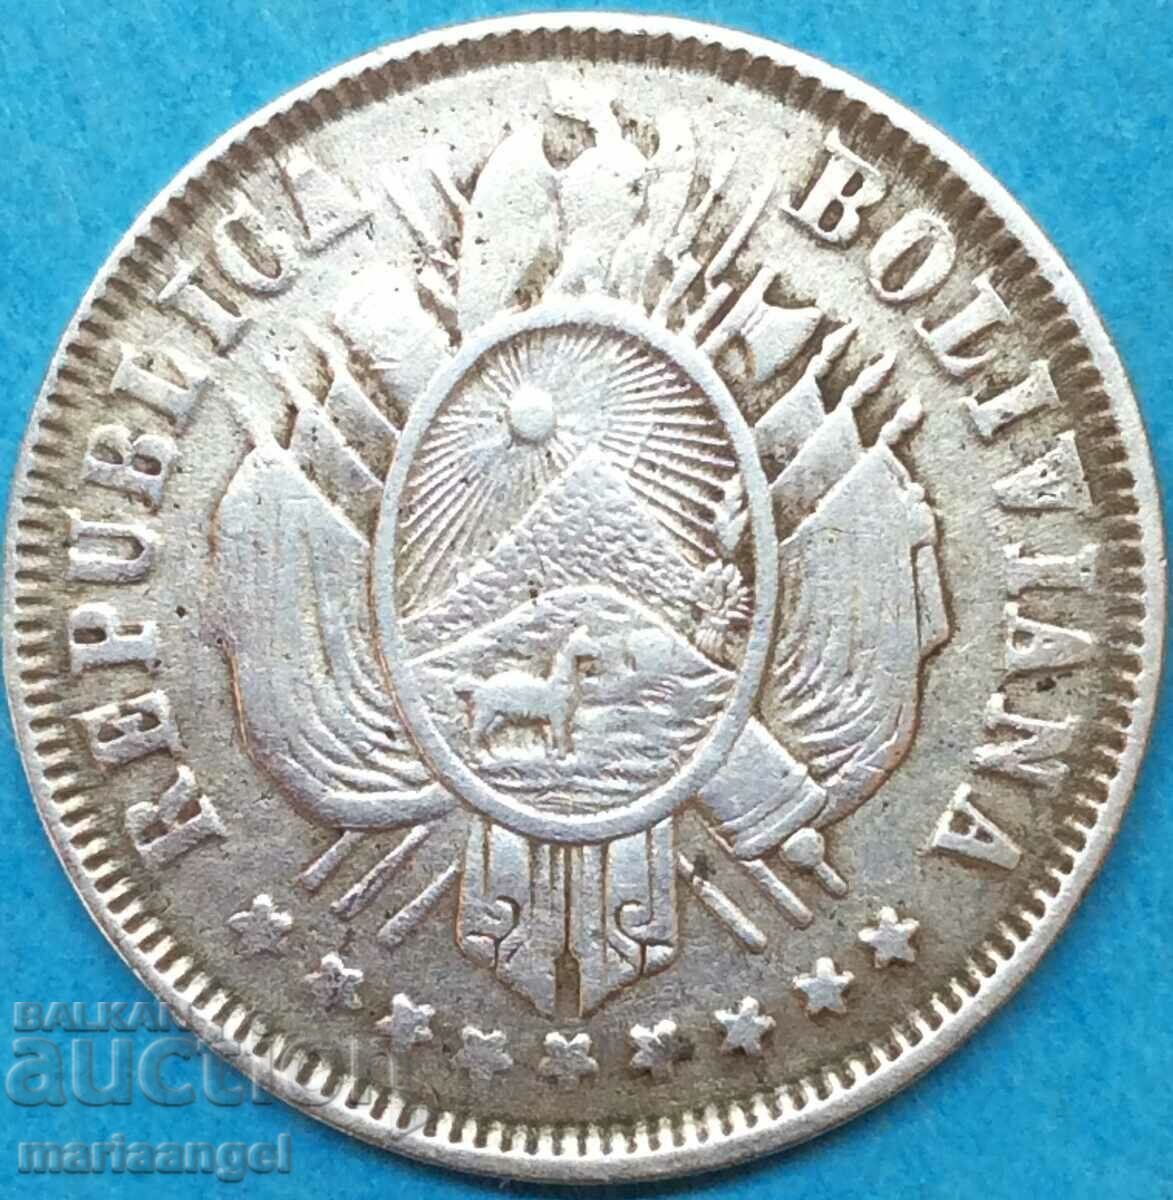 Bolivia 1883 20 cents 4.58g silver - quite rare